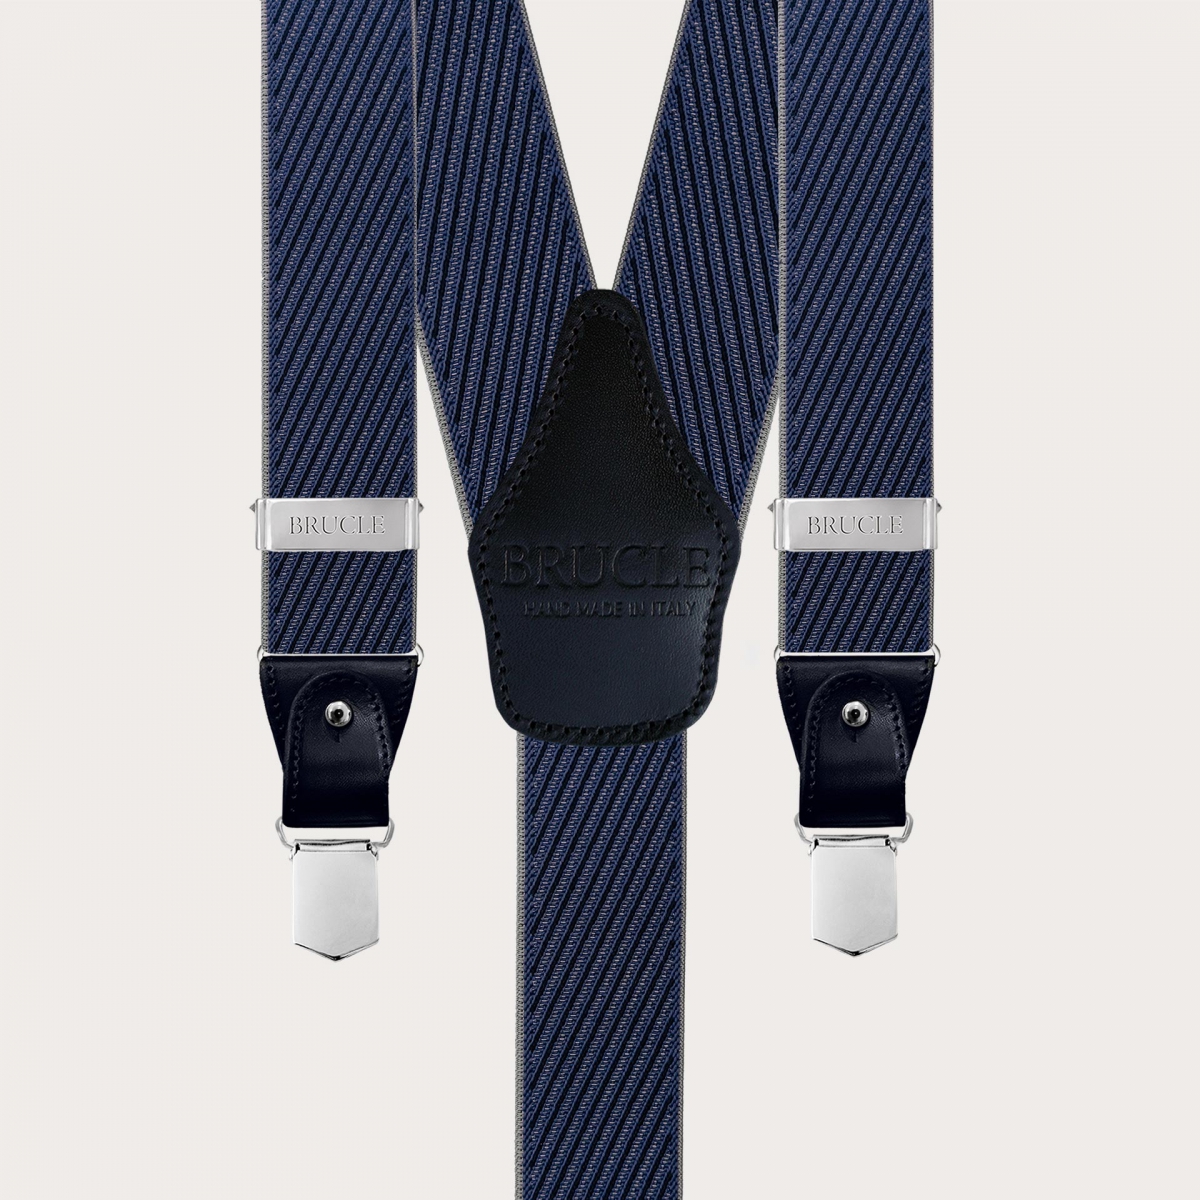 Elegante Hosenträger mit diagonalen Streifen in Blau, Grau und Marine, doppelte Verwendung